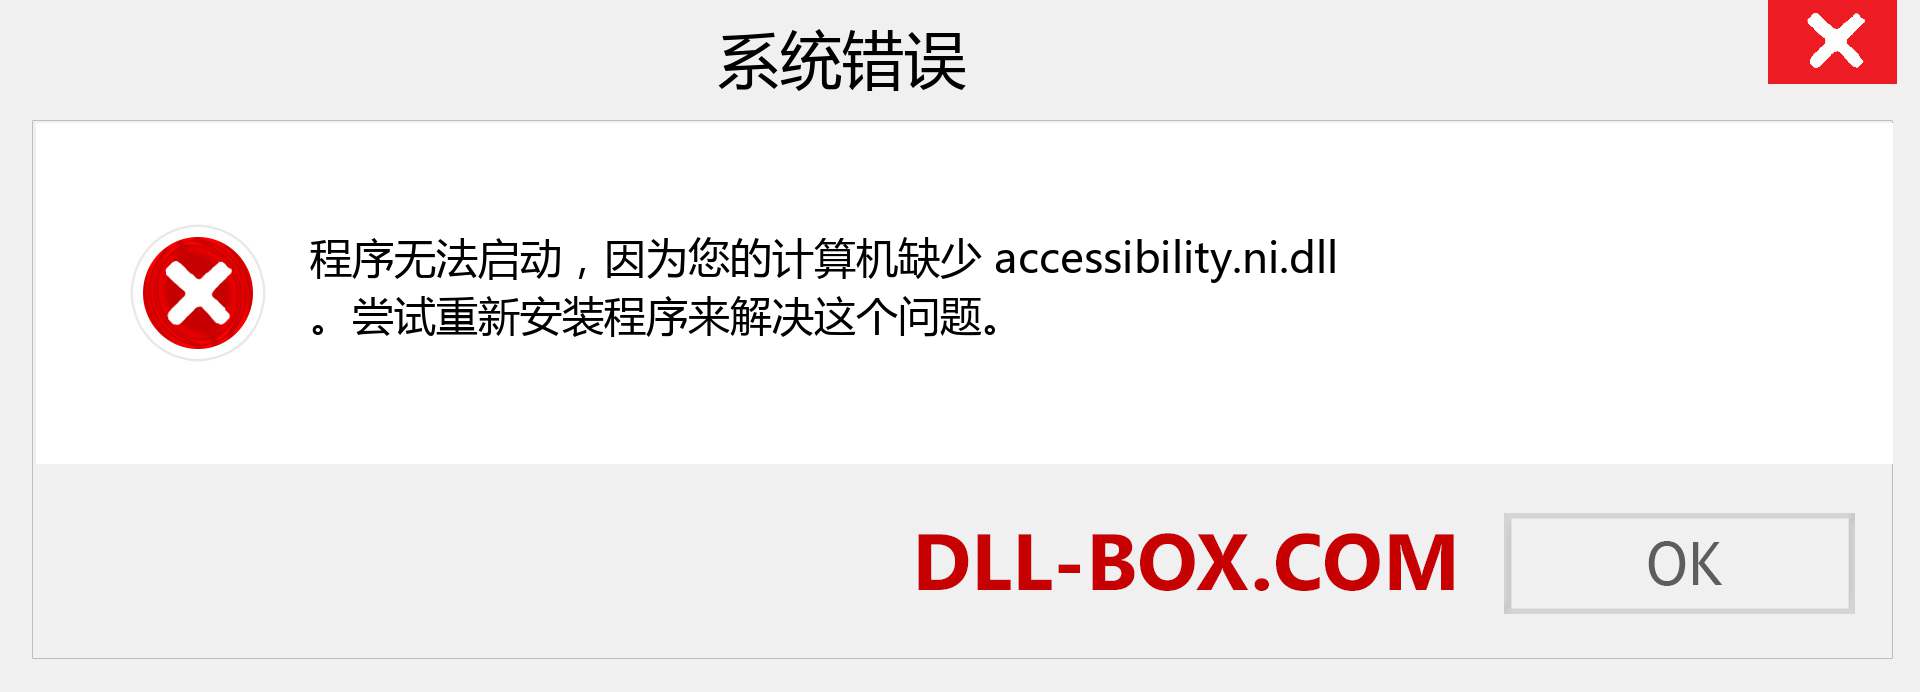 accessibility.ni.dll 文件丢失？。 适用于 Windows 7、8、10 的下载 - 修复 Windows、照片、图像上的 accessibility.ni dll 丢失错误